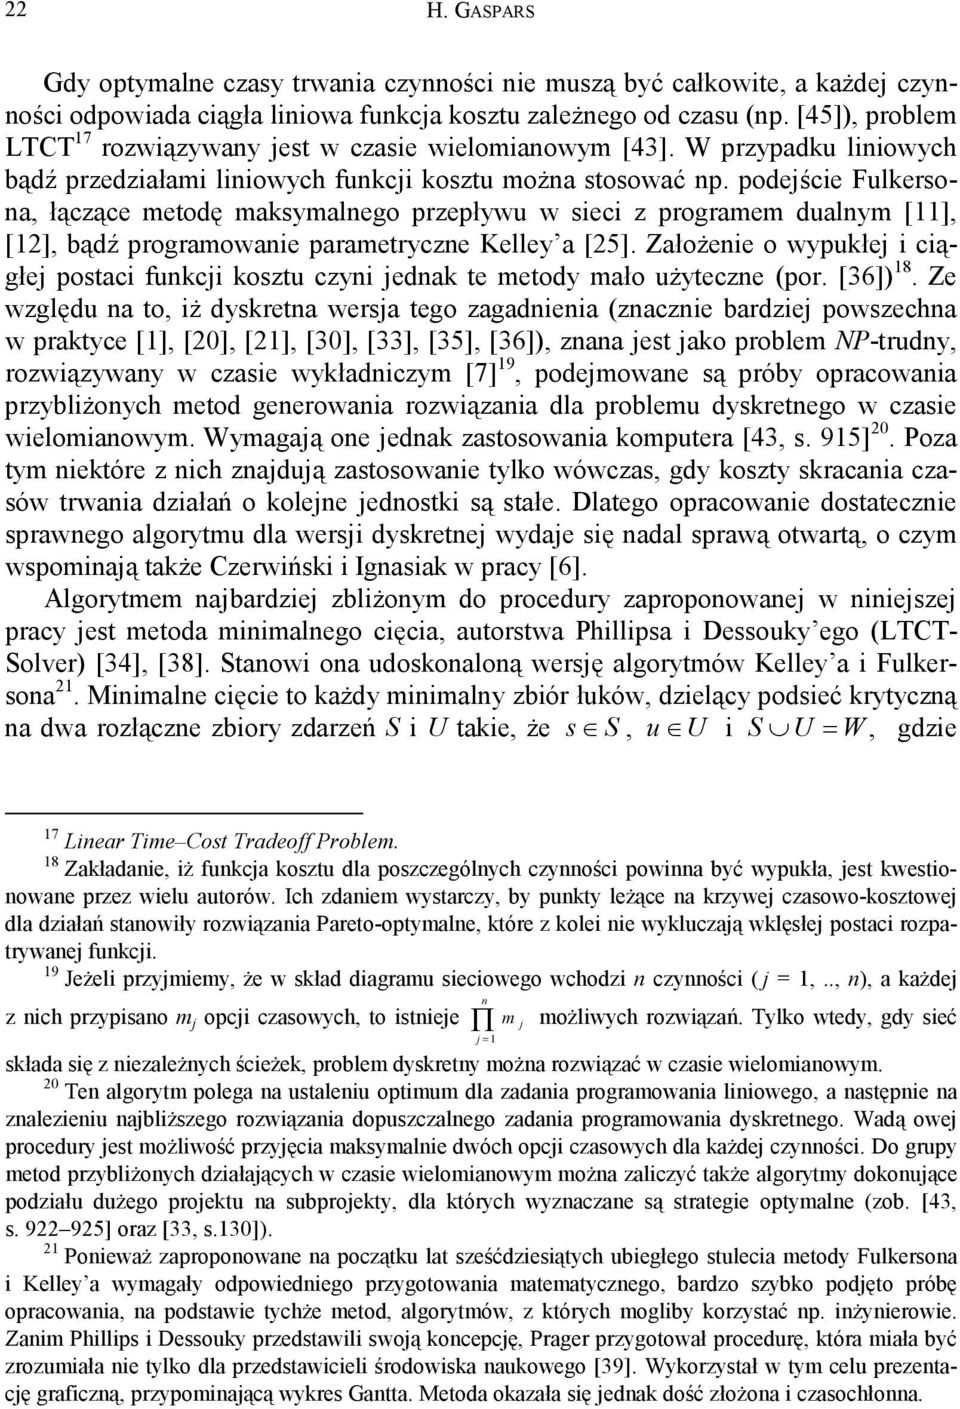 podejście Fulersona, łączące metodę masymalnego przepływu w sieci z programem dualnym [11], [1], bądź programowanie parametryczne Kelley a [5].